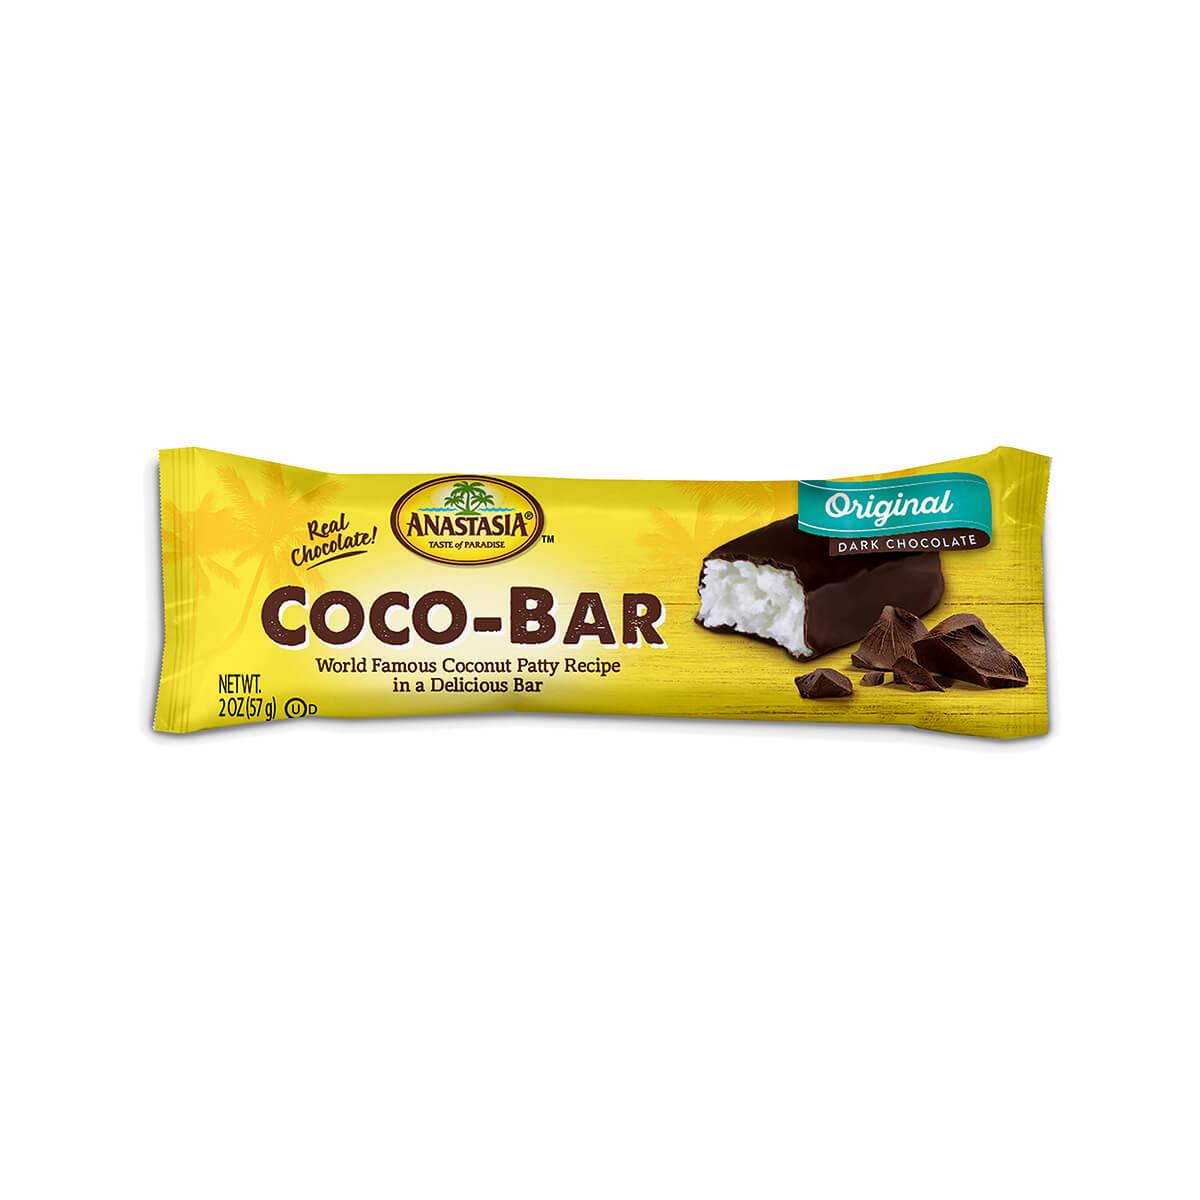  Dark Chocolate Coco- Bar Candy